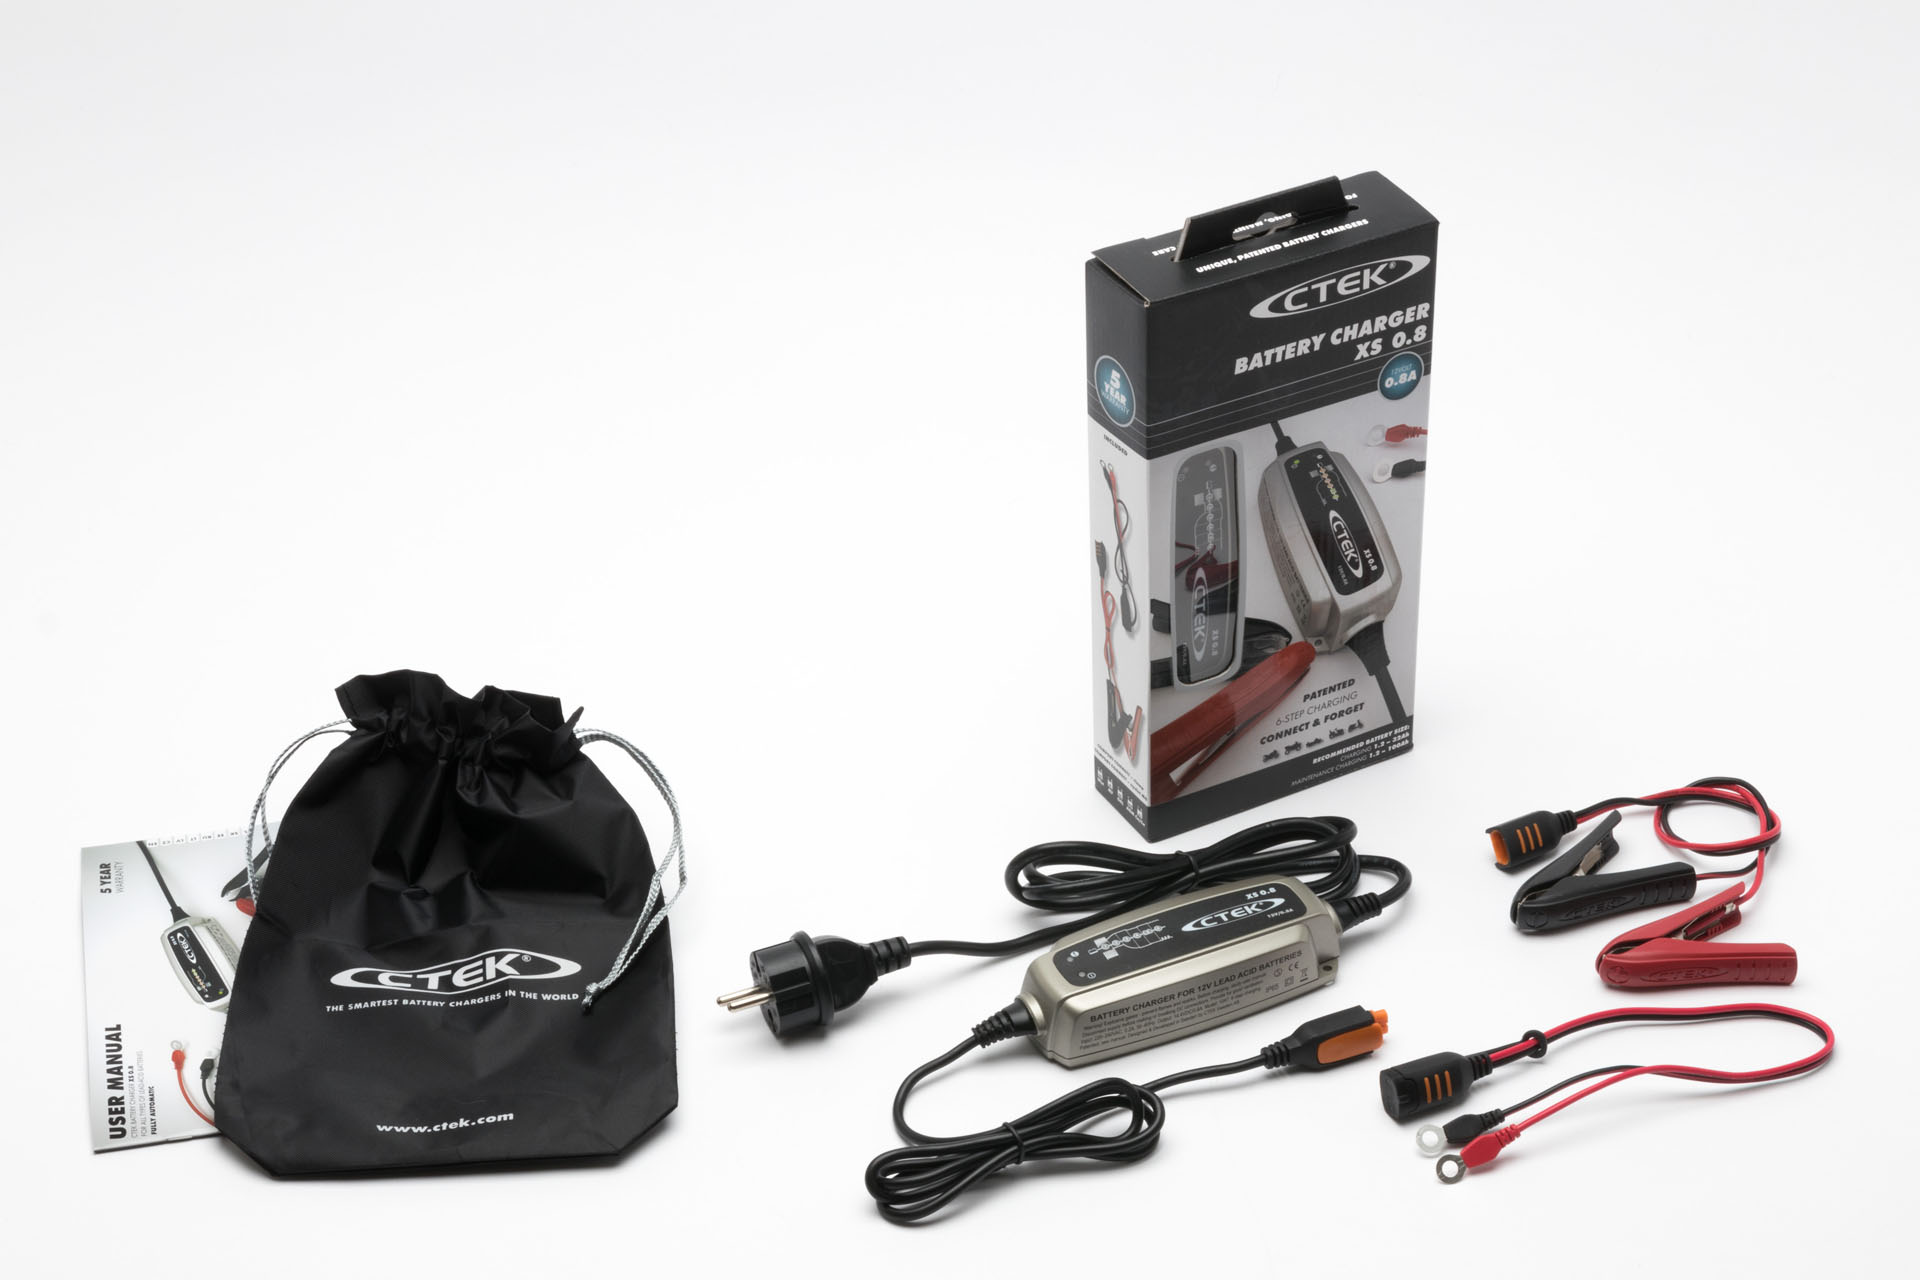 CARGADOR BATERIA COMPACTO CTEK XS 0.8 PARA MOTO, Baterias / Cargadores